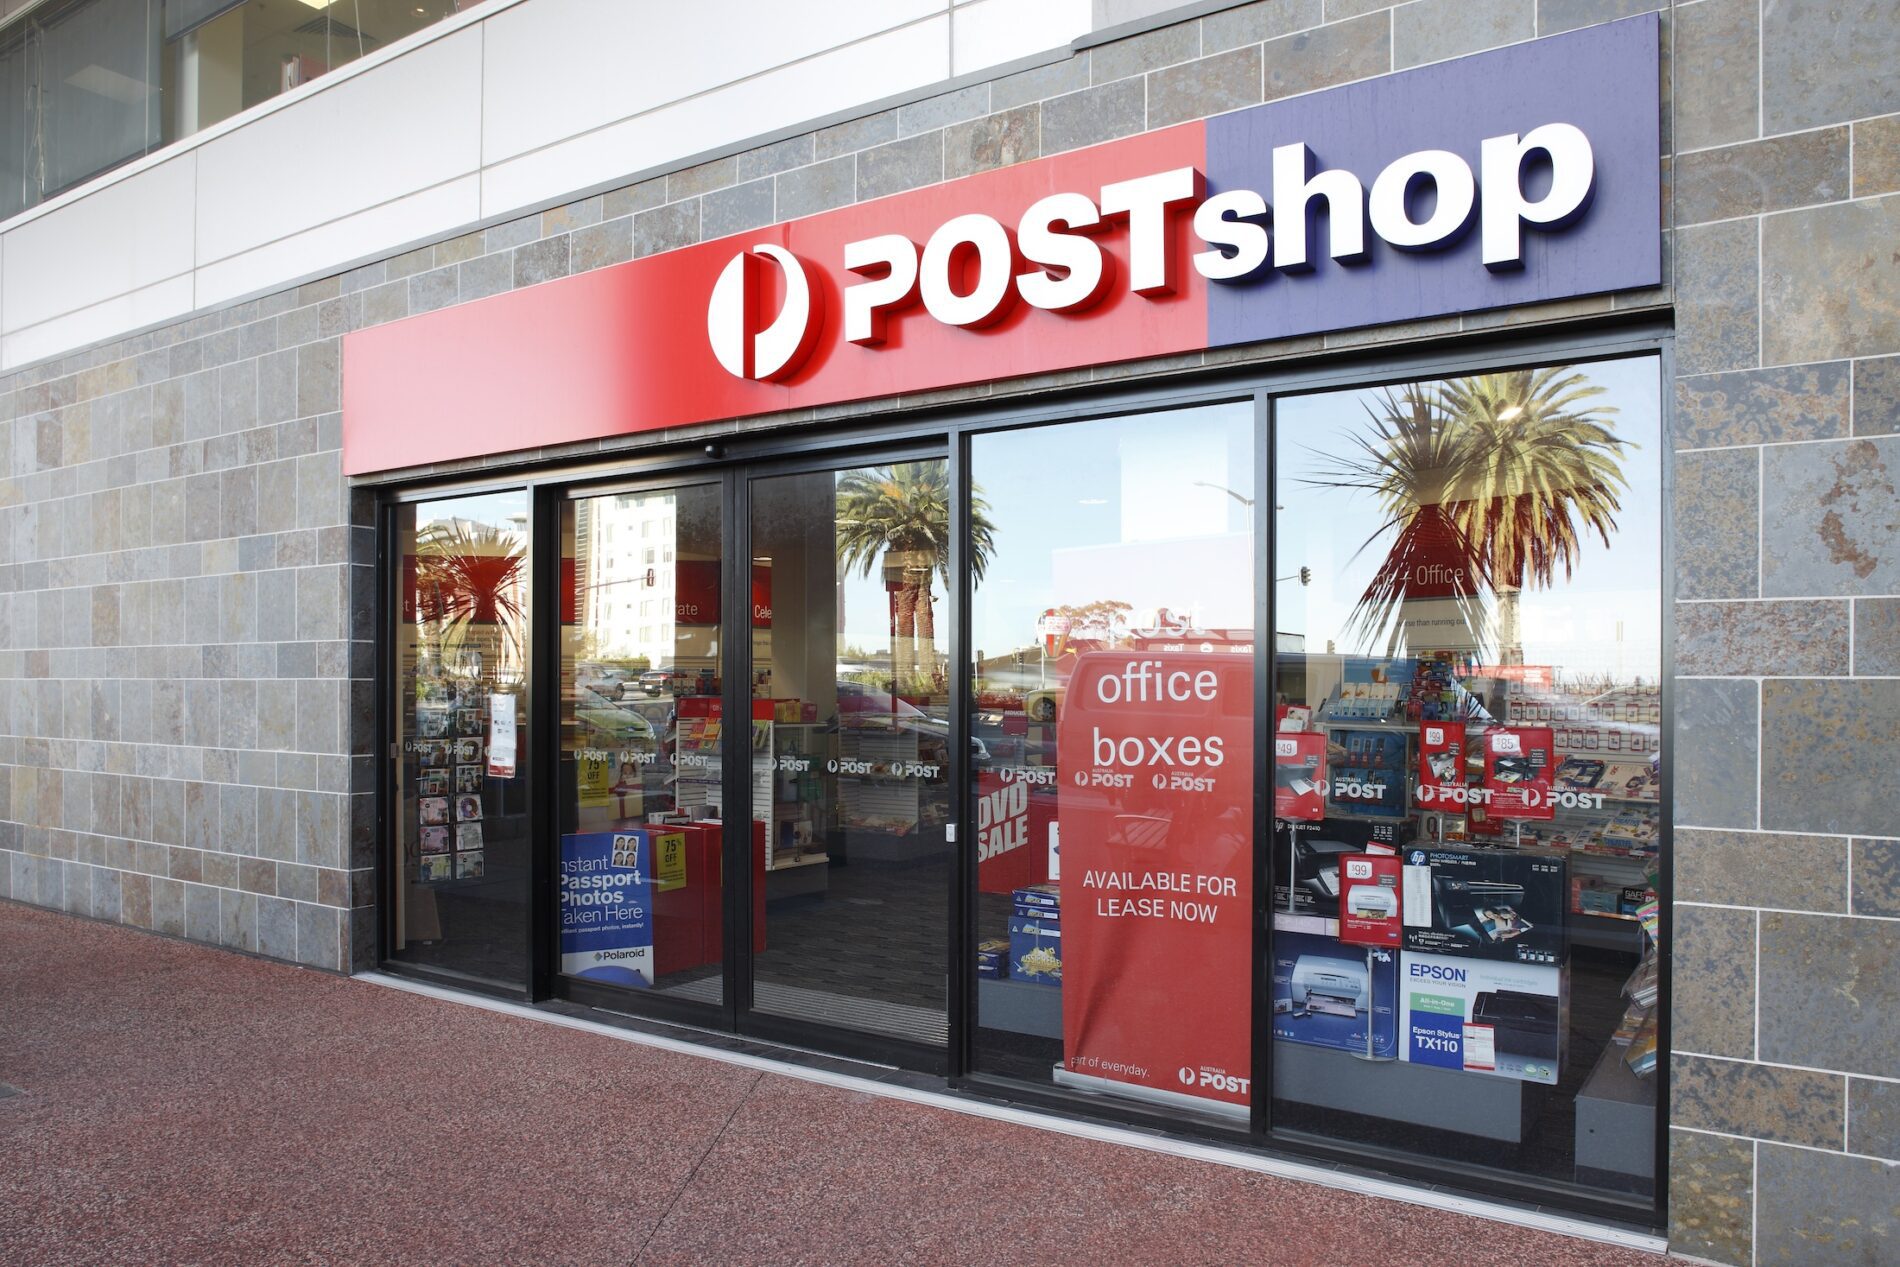 Australia Post shop facade and entry